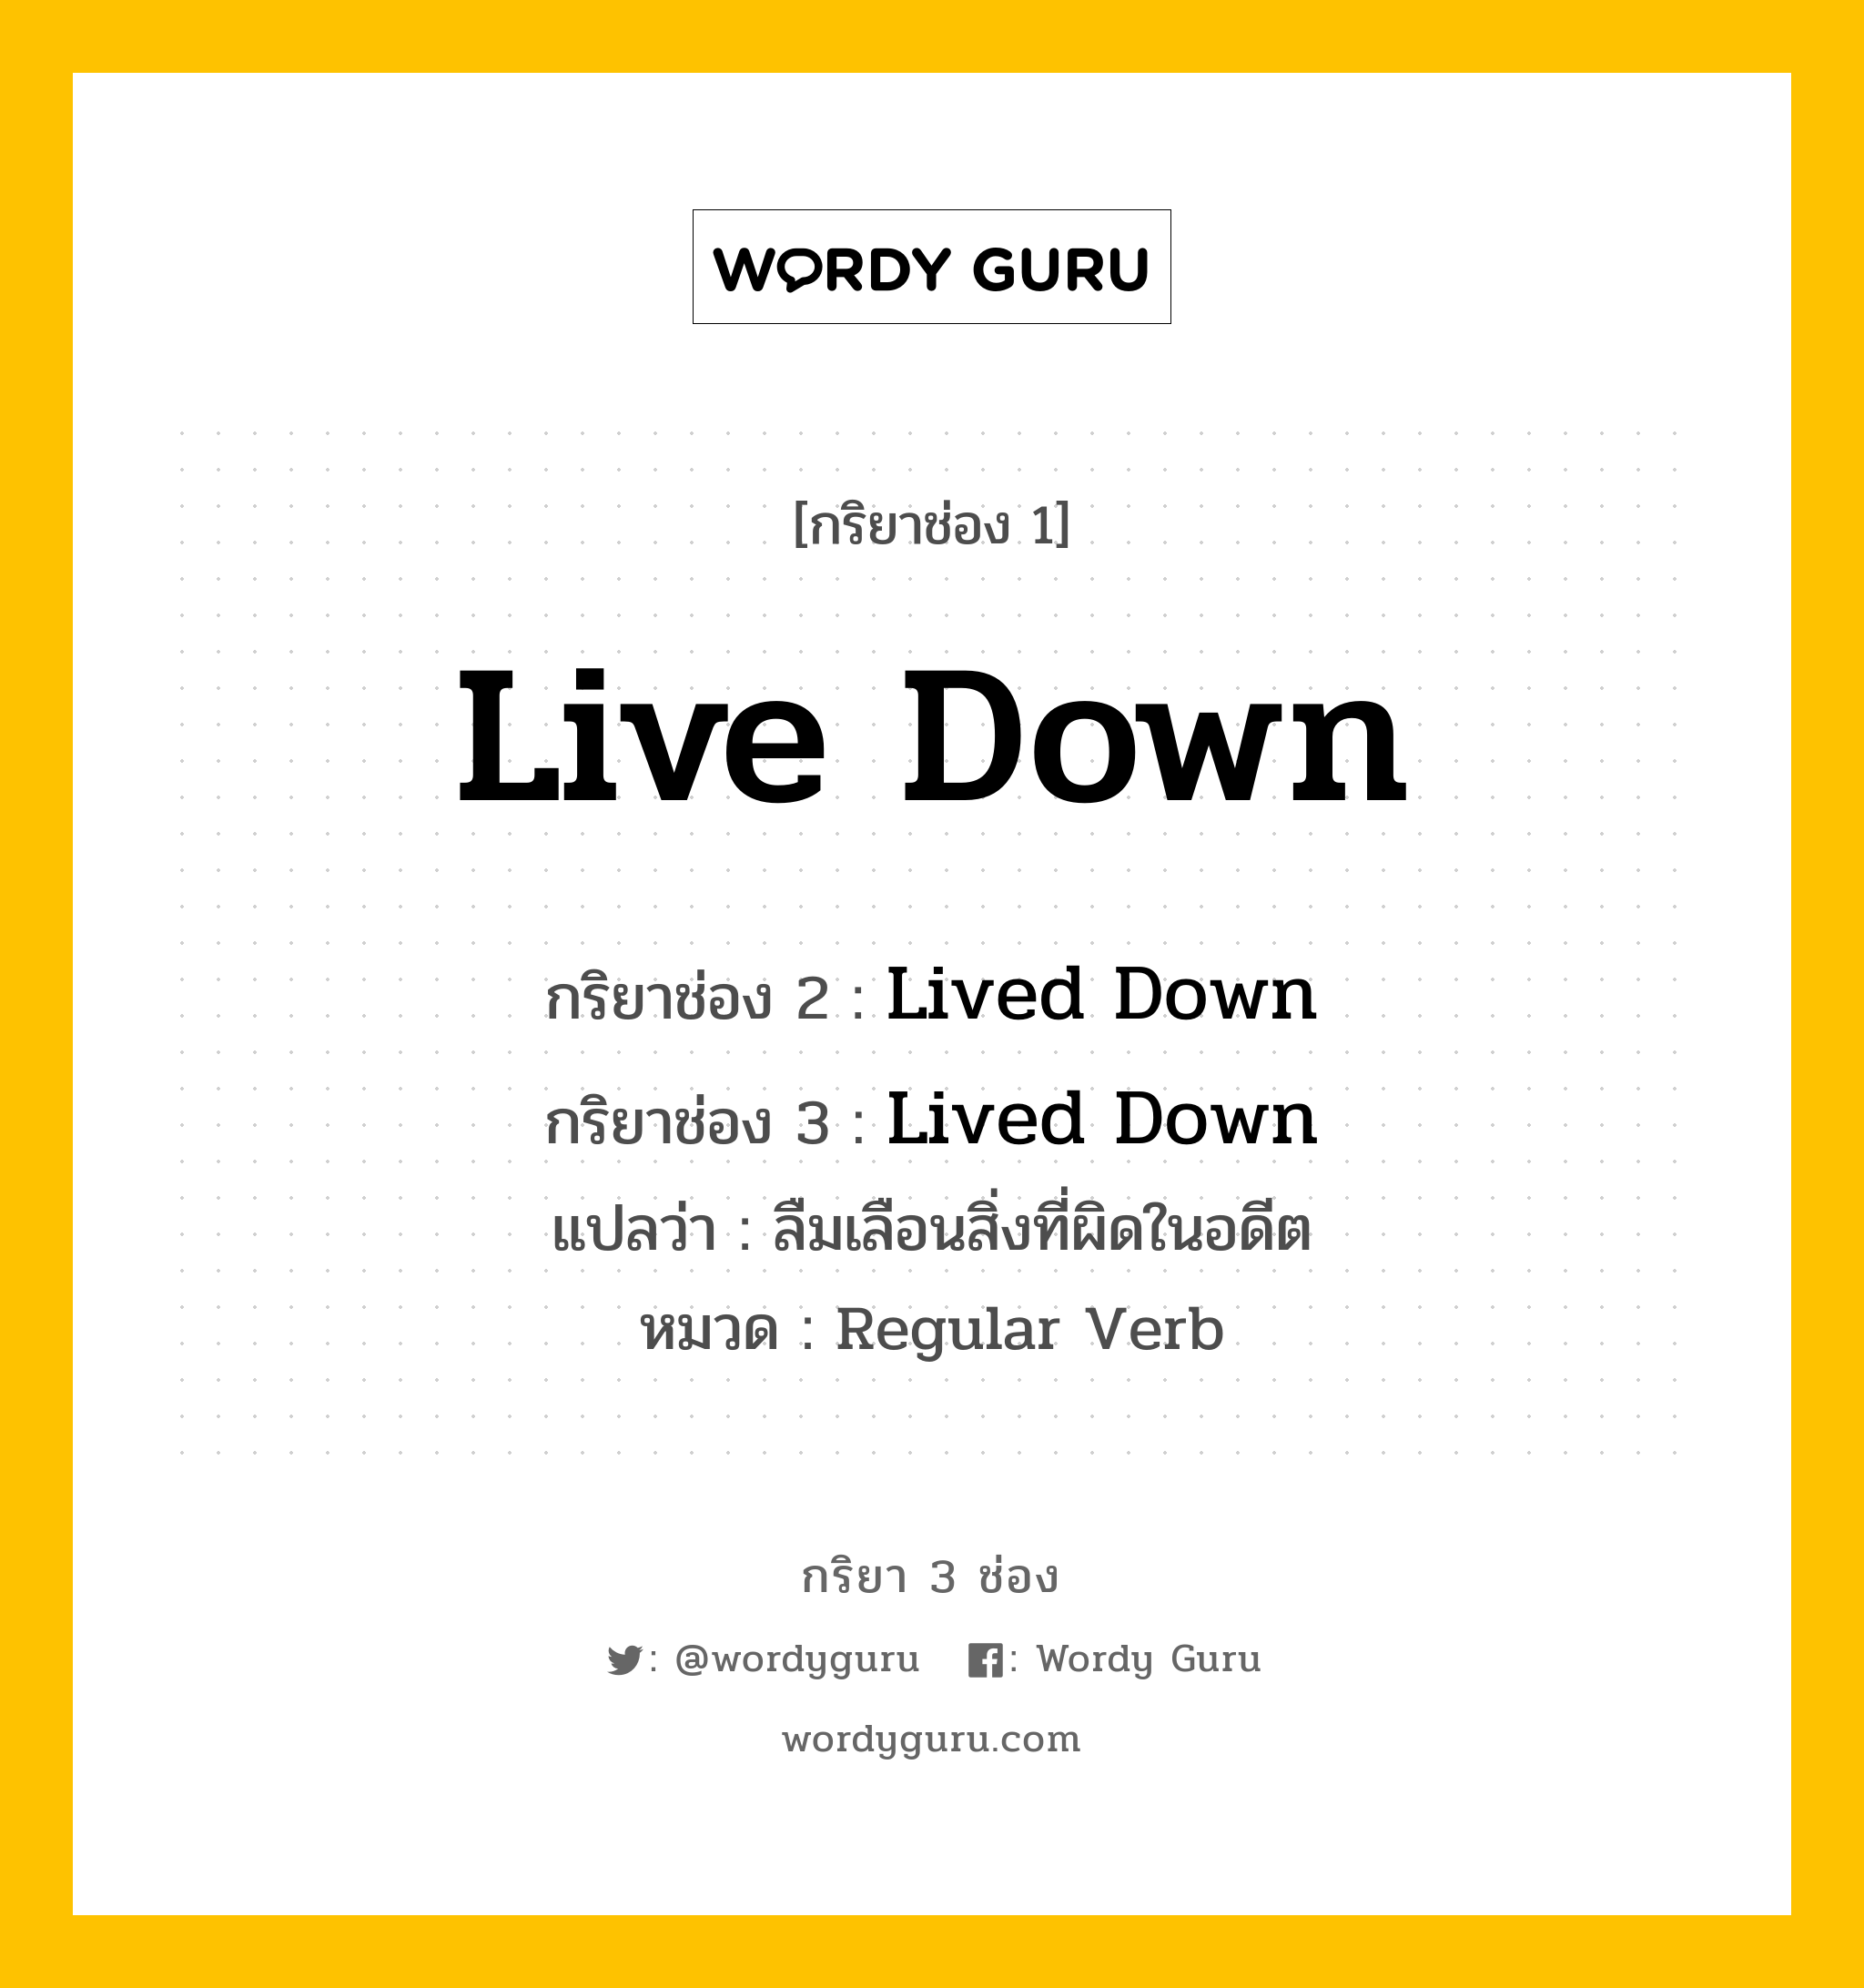 กริยา 3 ช่อง ของ Live Down คืออะไร? มาดูคำอ่าน คำแปลกันเลย, กริยาช่อง 1 Live Down กริยาช่อง 2 Lived Down กริยาช่อง 3 Lived Down แปลว่า ลืมเลือนสิ่งที่ผิดในอดีต หมวด Regular Verb หมวด Regular Verb